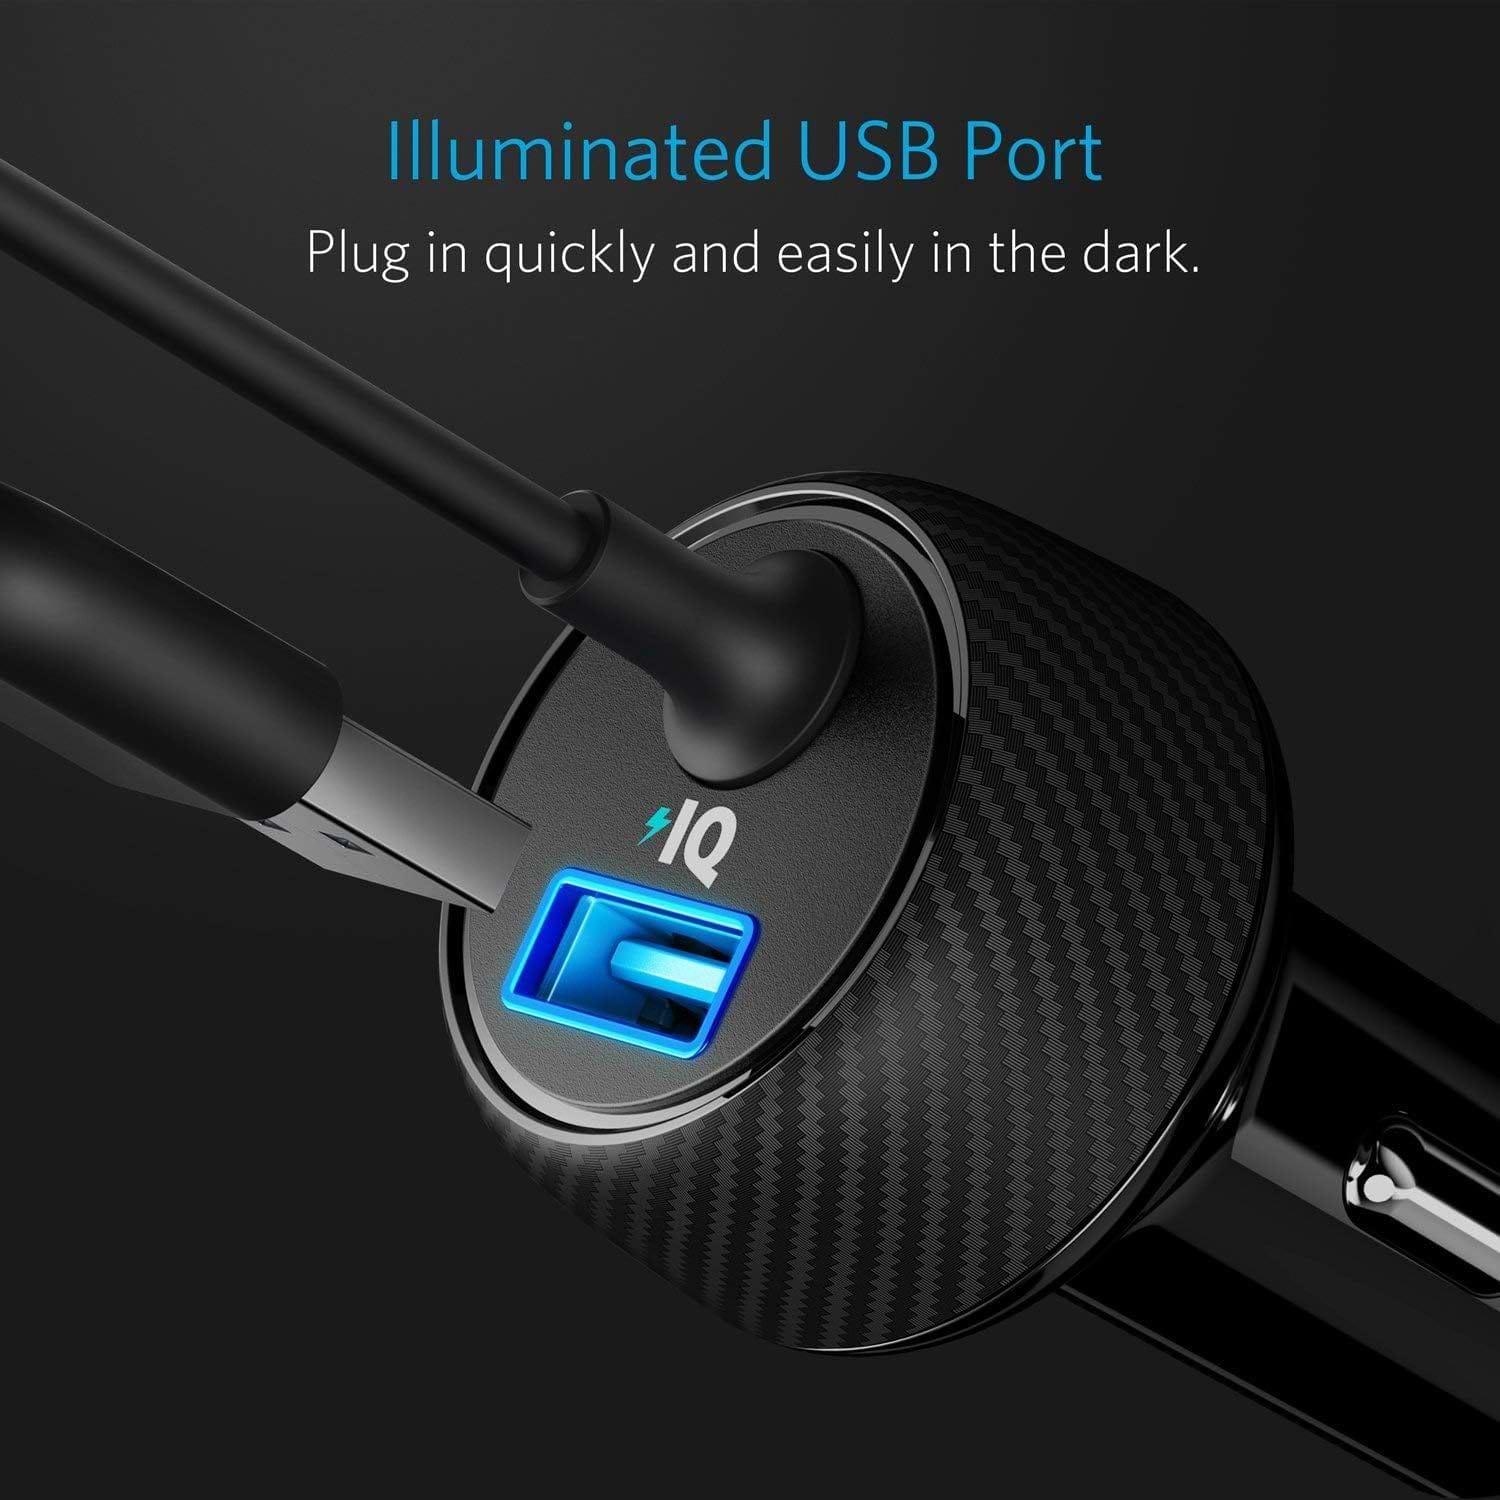 מטען רכב וכבל לאייפון 0.9 מטר Anker Elite USB Port+Lightning Cable 24W - אחריות לשנה ע"י יבואן רשמי